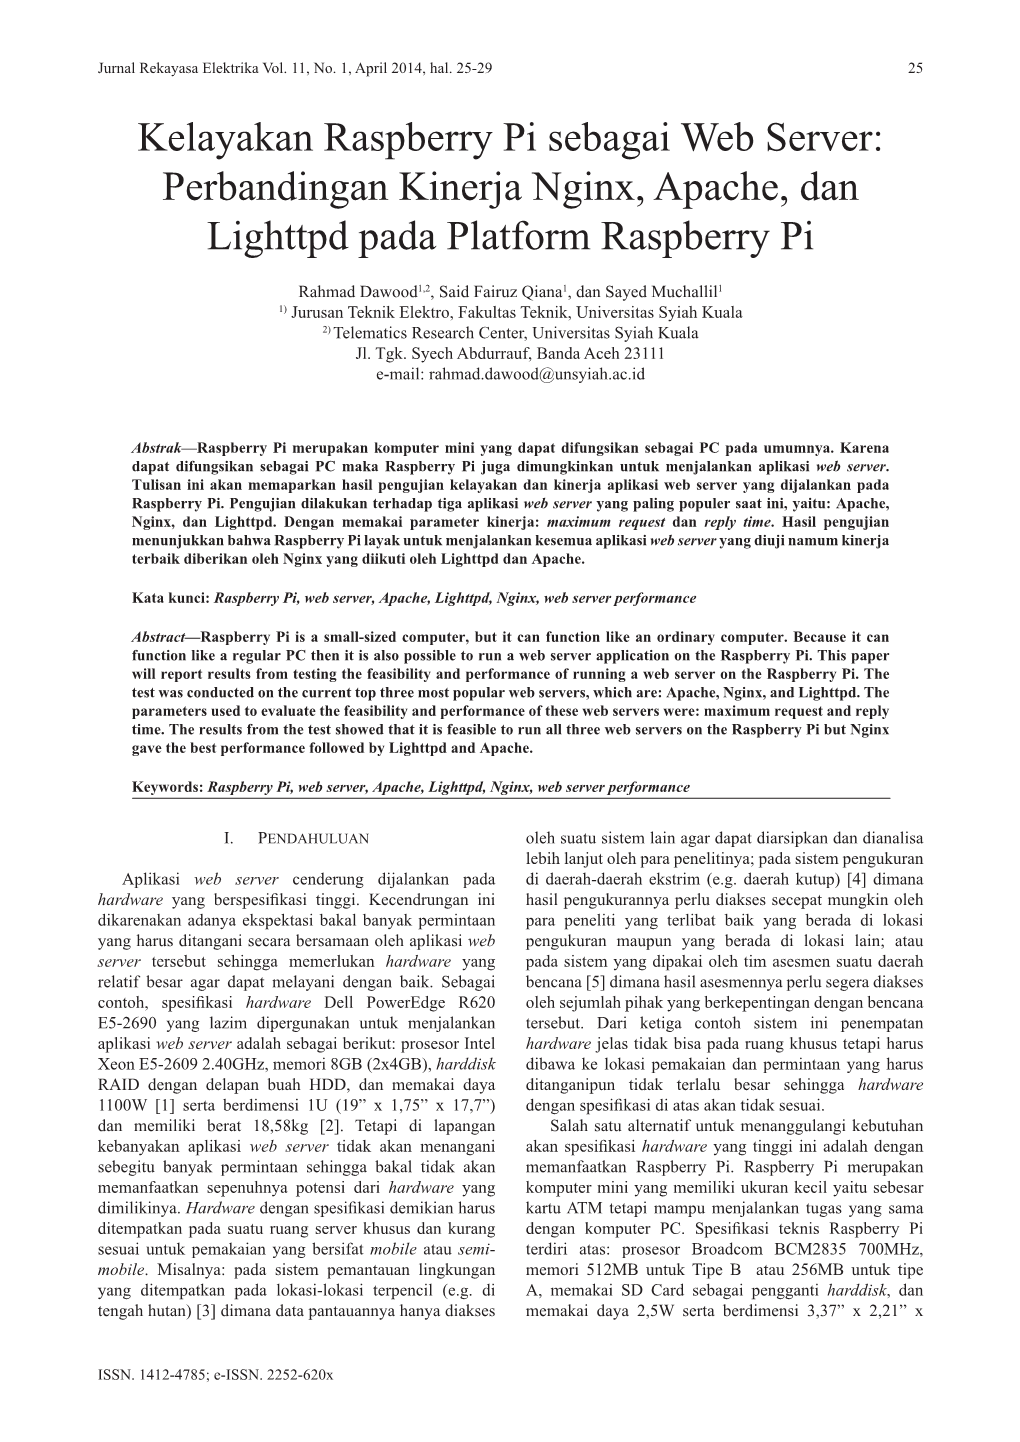 Kelayakan Raspberry Pi Sebagai Web Server: Perbandingan Kinerja Nginx, Apache, Dan Lighttpd Pada Platform Raspberry Pi